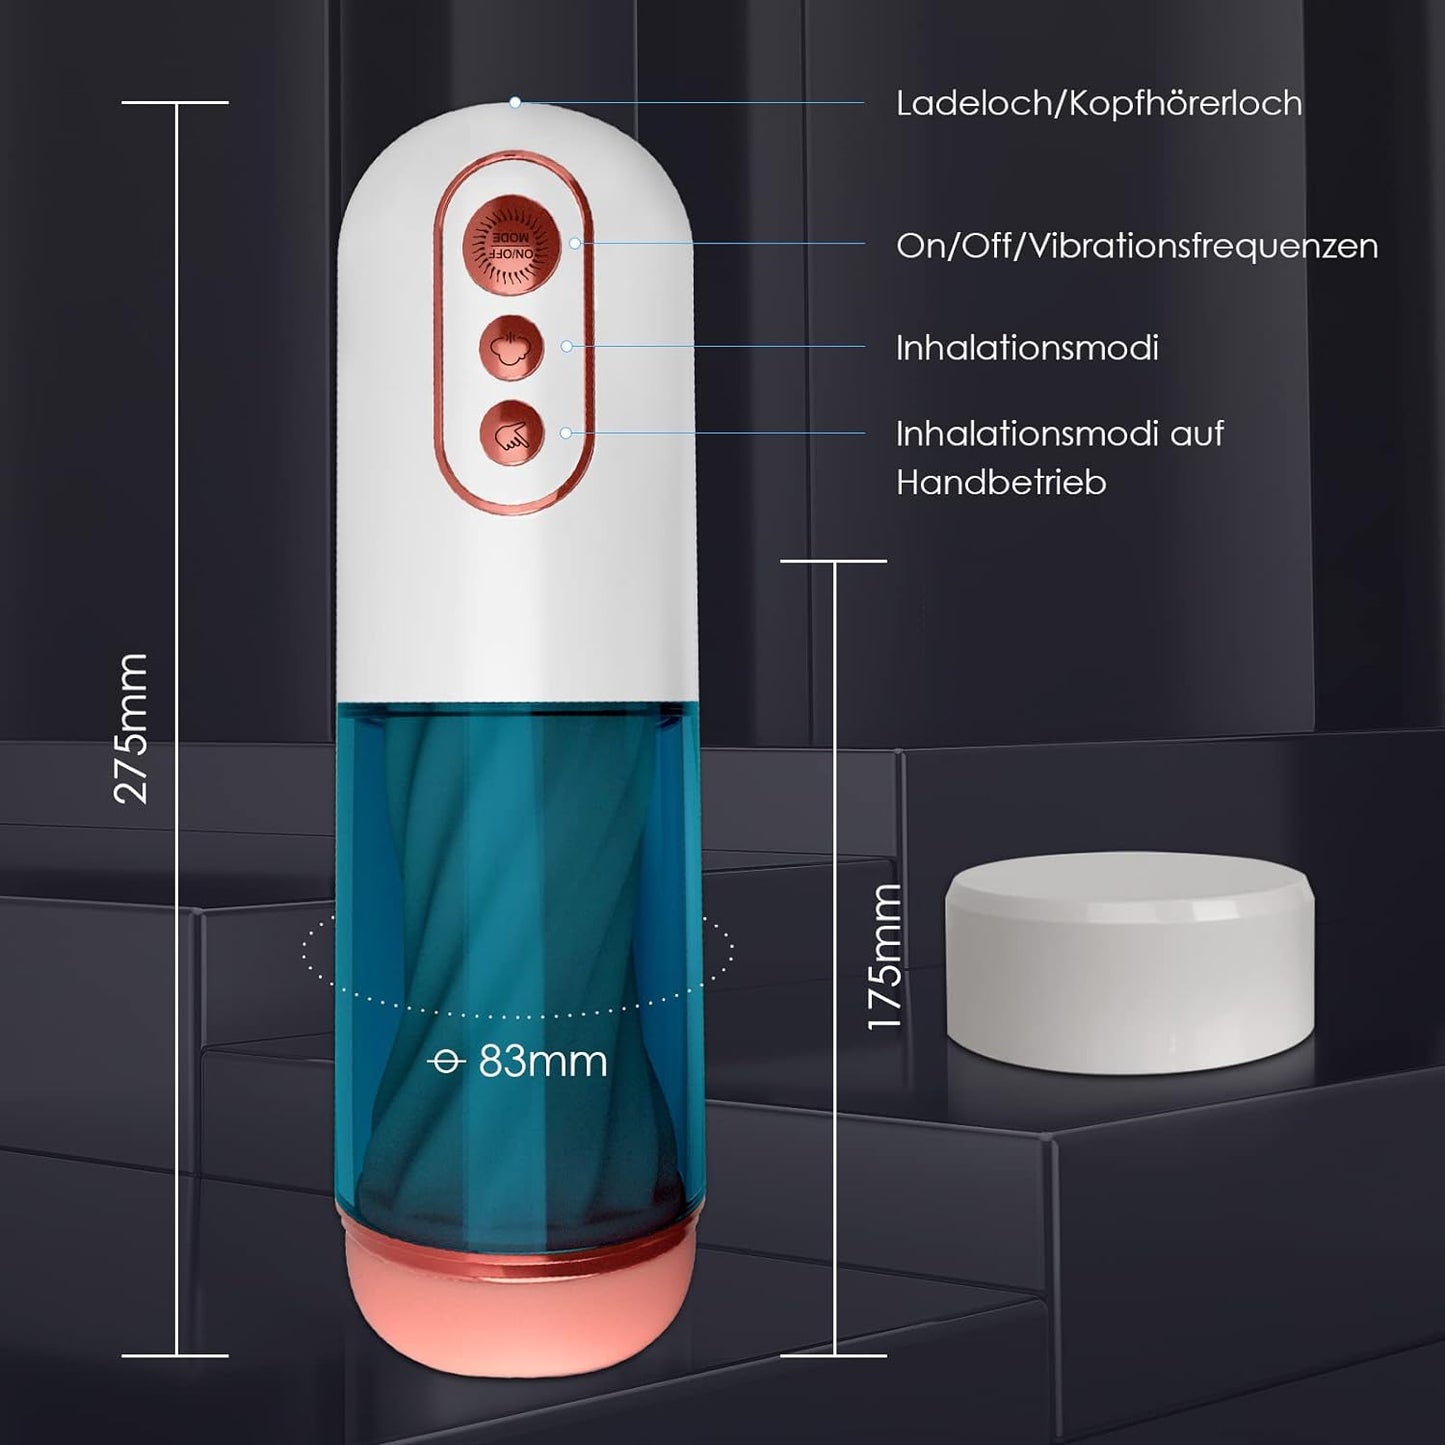 3D Realistische Oral Taschenmuschi Elektrischer Masturbatoren mit 7 Saug- und Vibrationsmodi